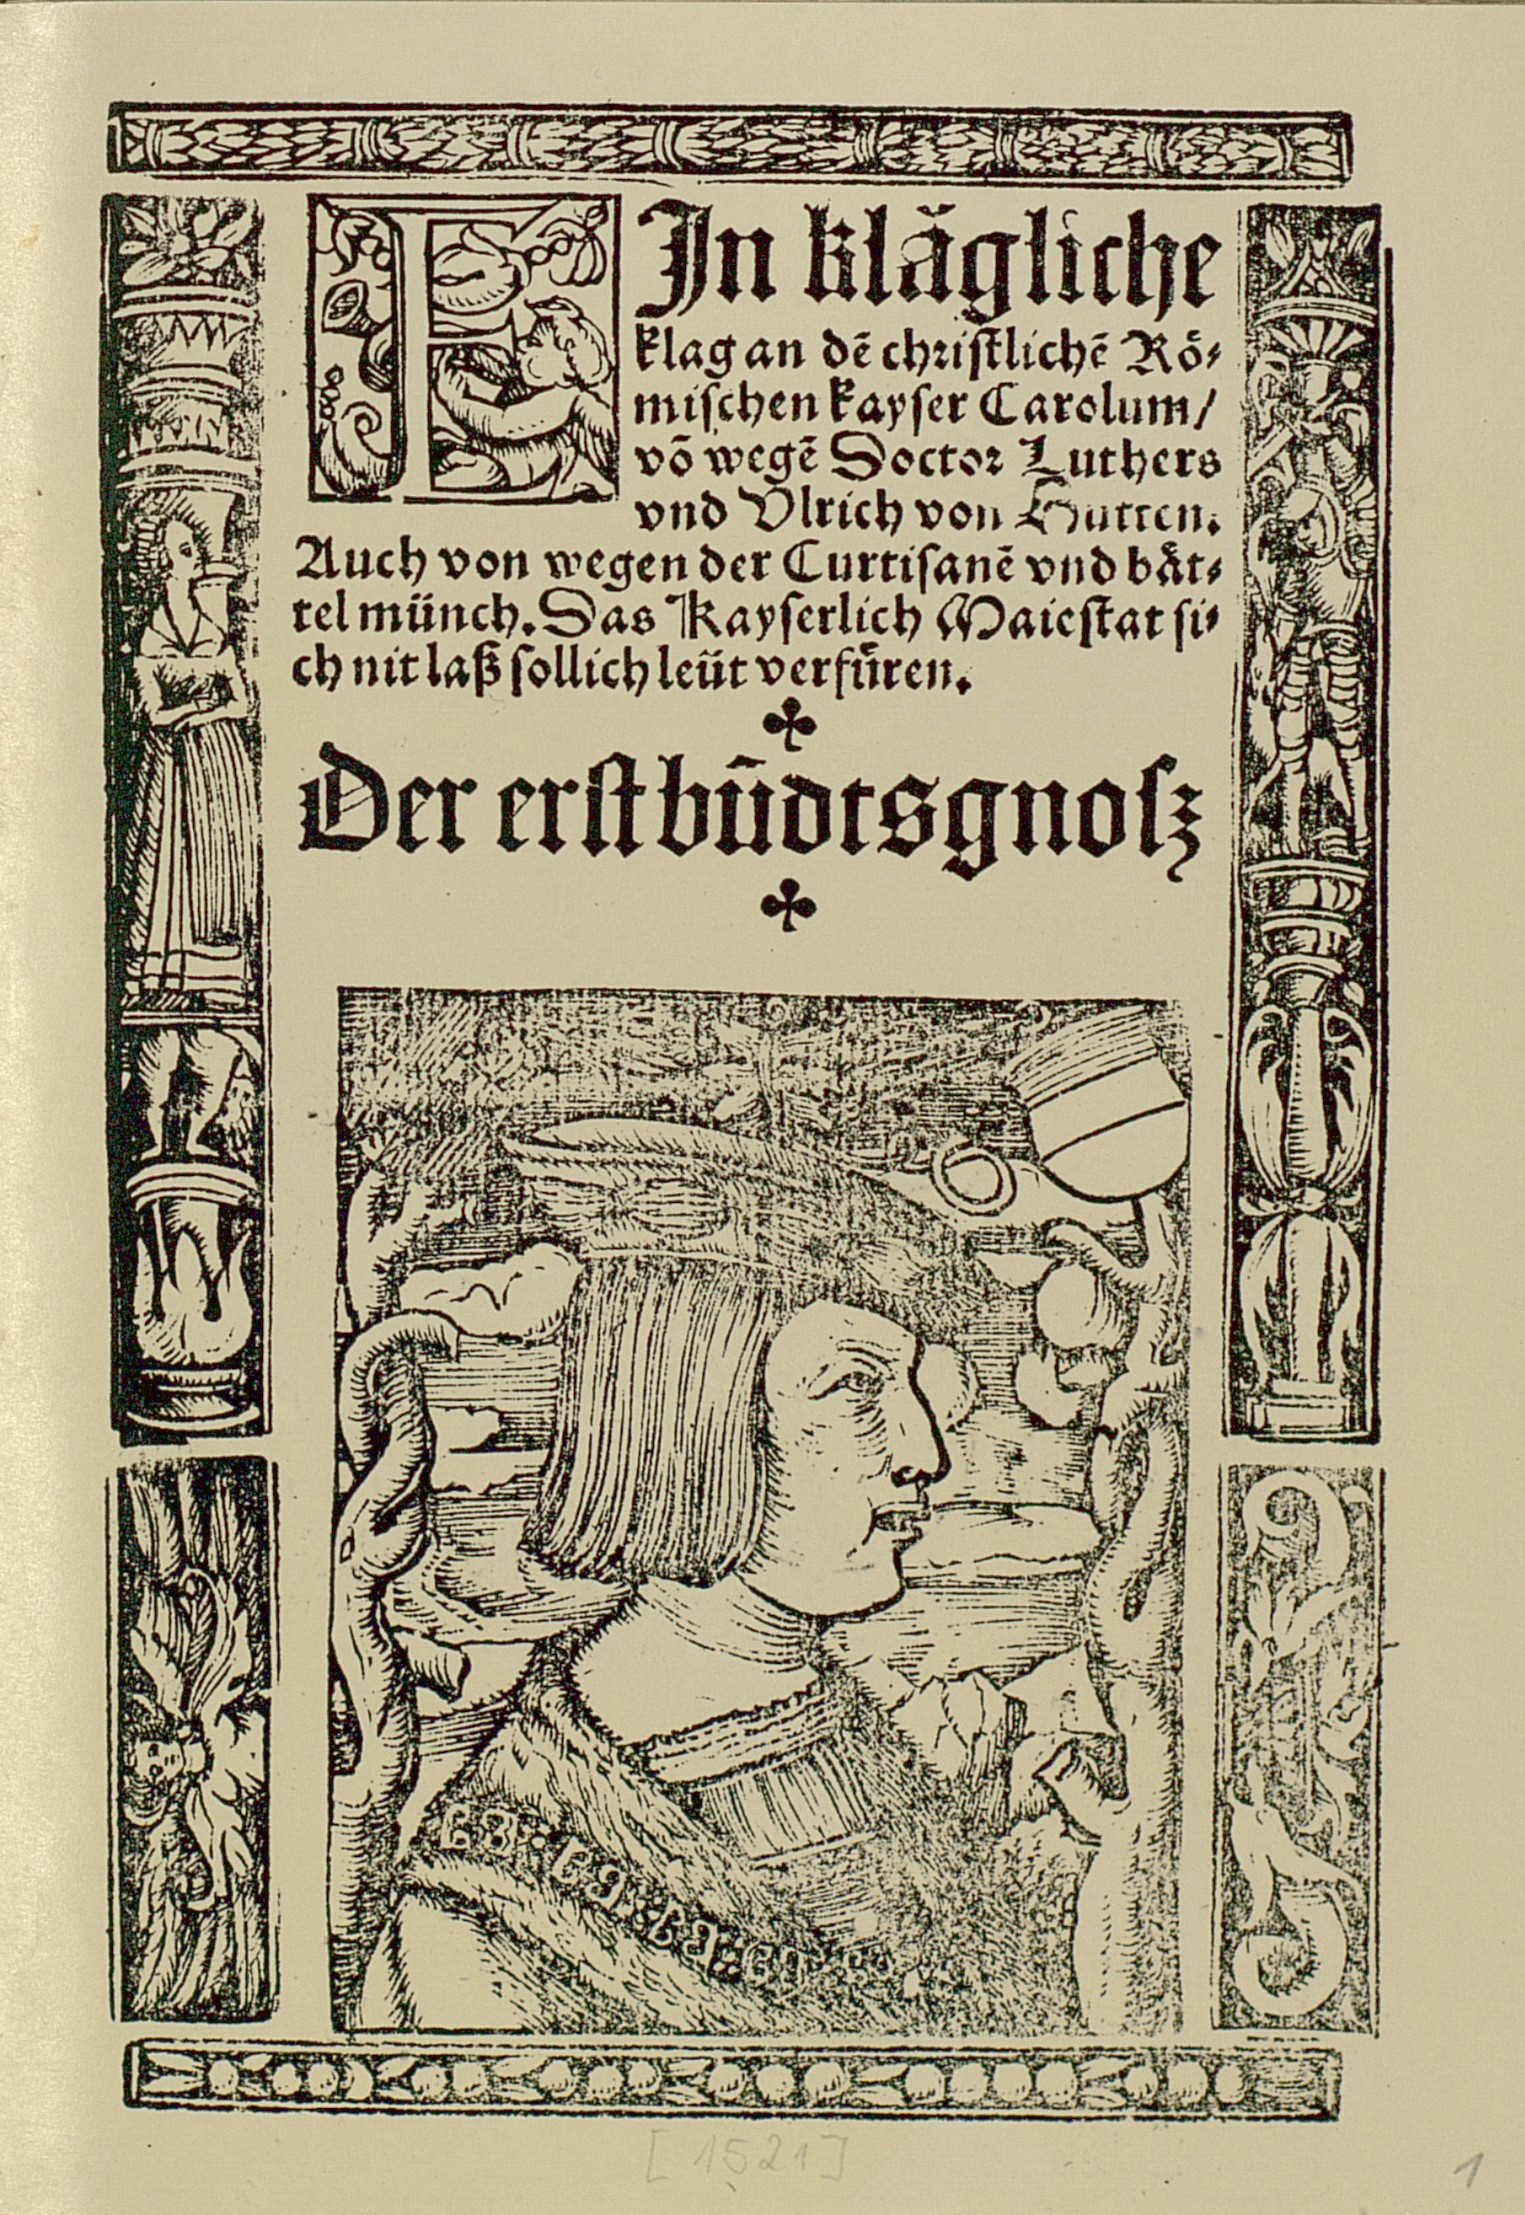 Kaiser Karl V., Titelblatt zu Johann Eberlin von Günzburgs reformatorischer Streitschrift "Der erst bundtsgnoß", gedruckt von Pamphilus Gengenbach in Basel 1521. - Signatur: 74 A 3646 RH.